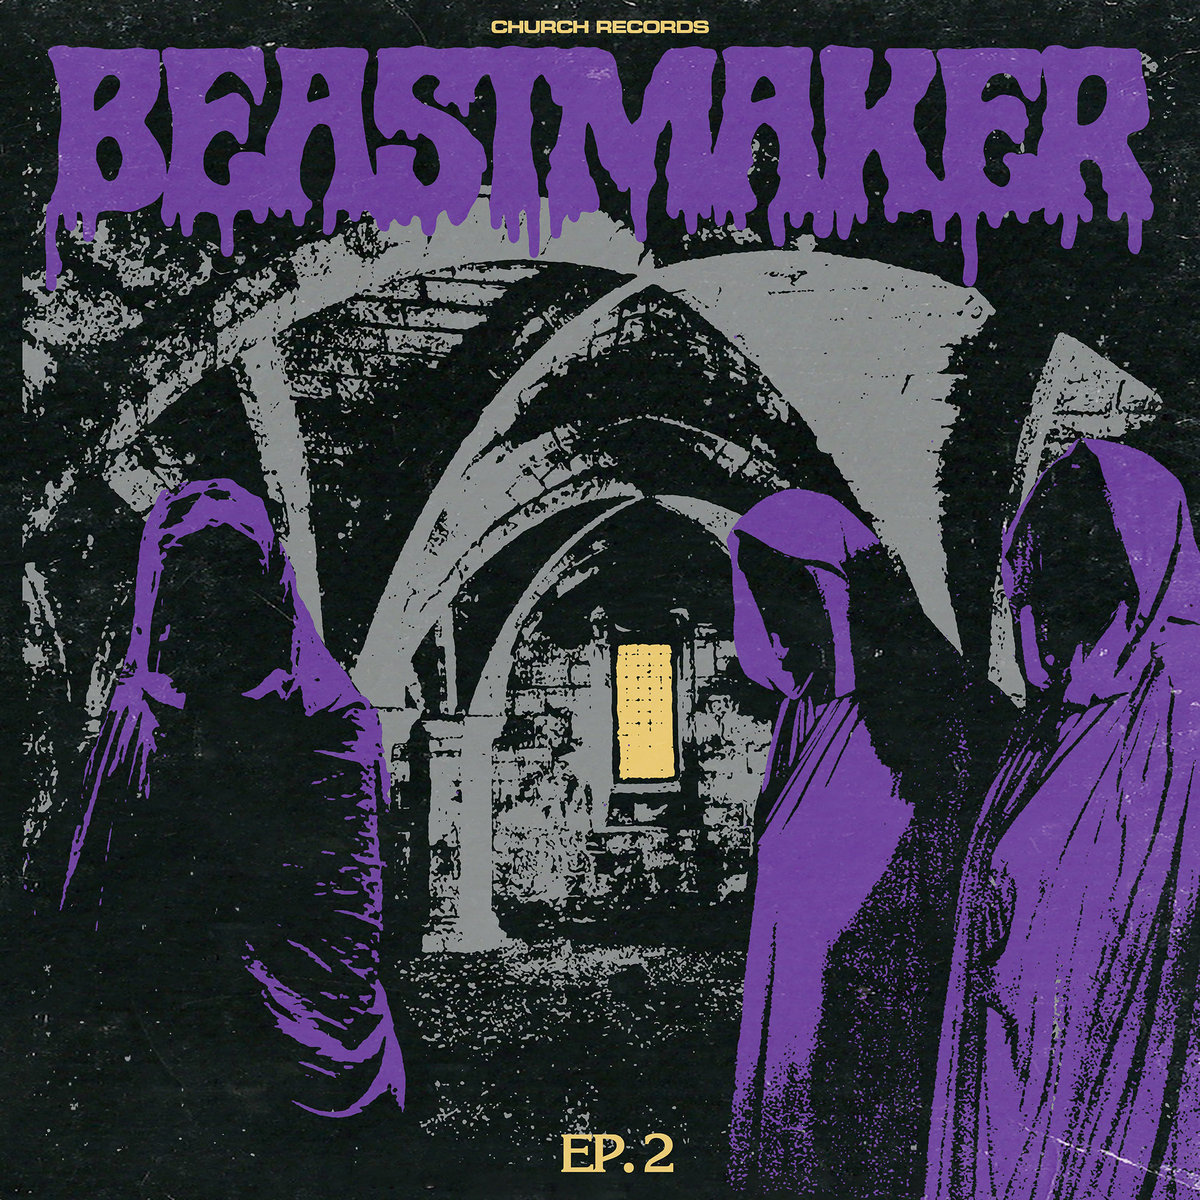 Beastmaker - EP. 2 / EP. 3 / EP. 4 / EP. 5 / EP. 6